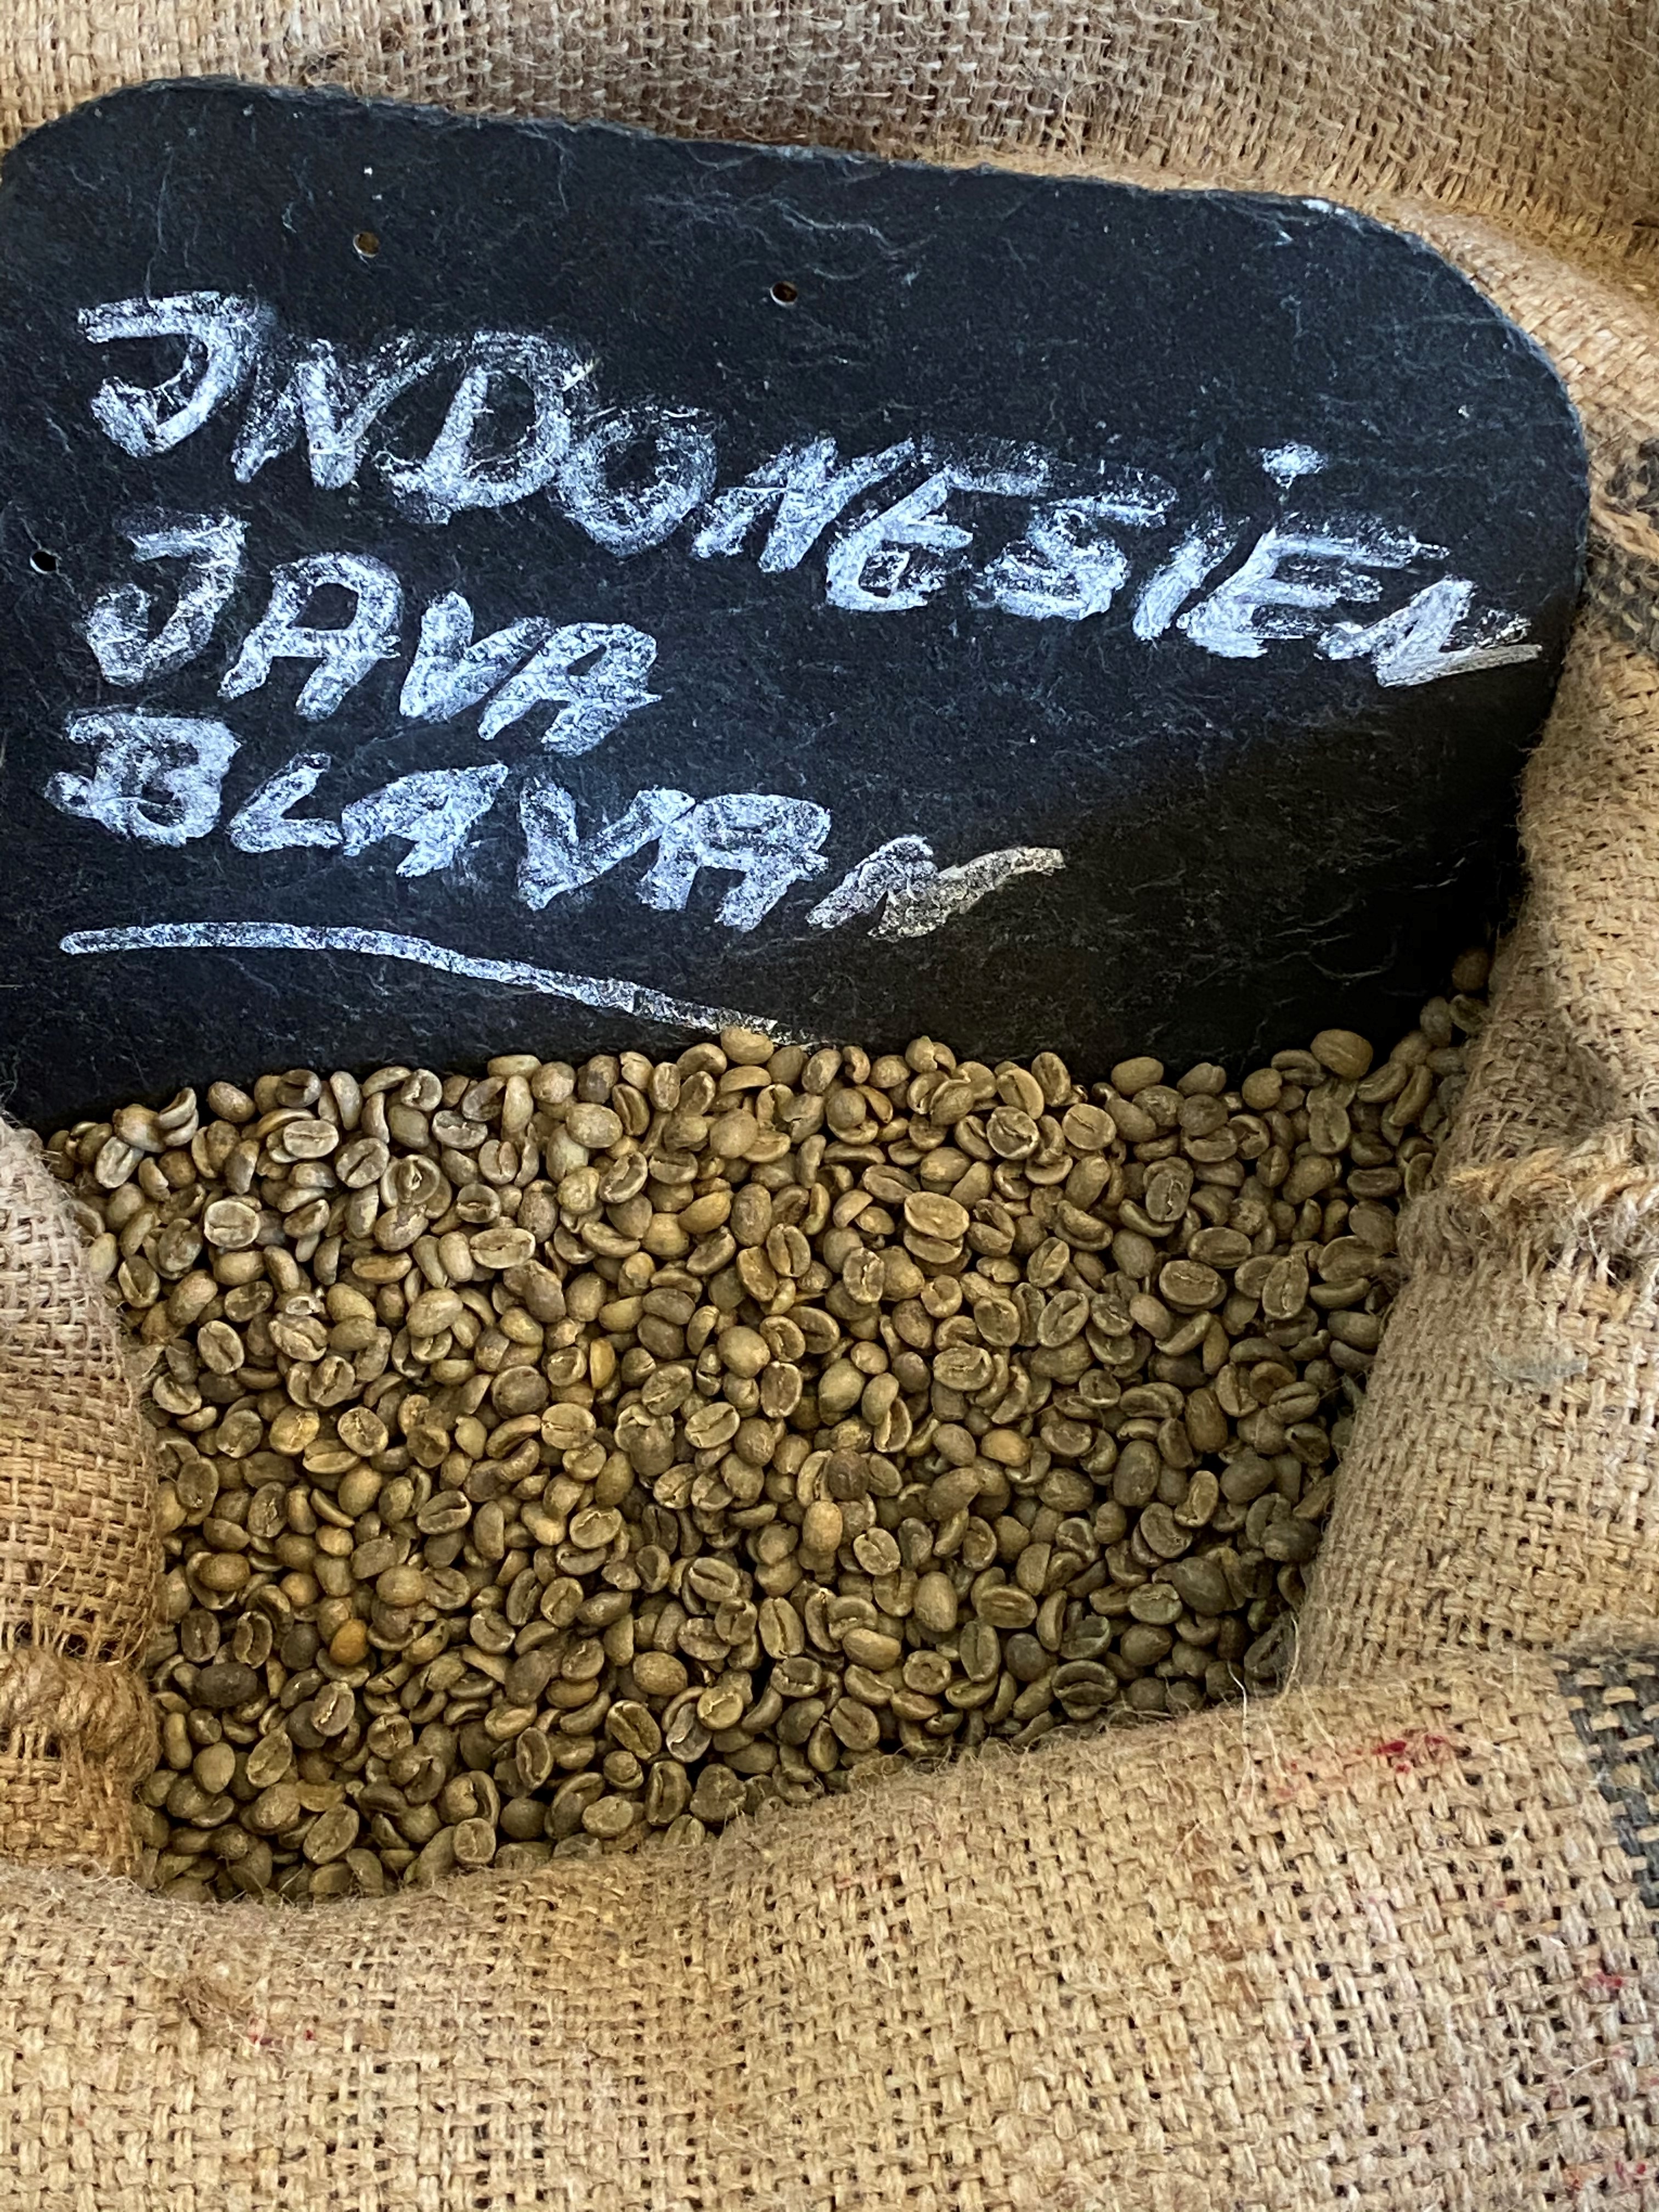 Indonesien Java Blawan